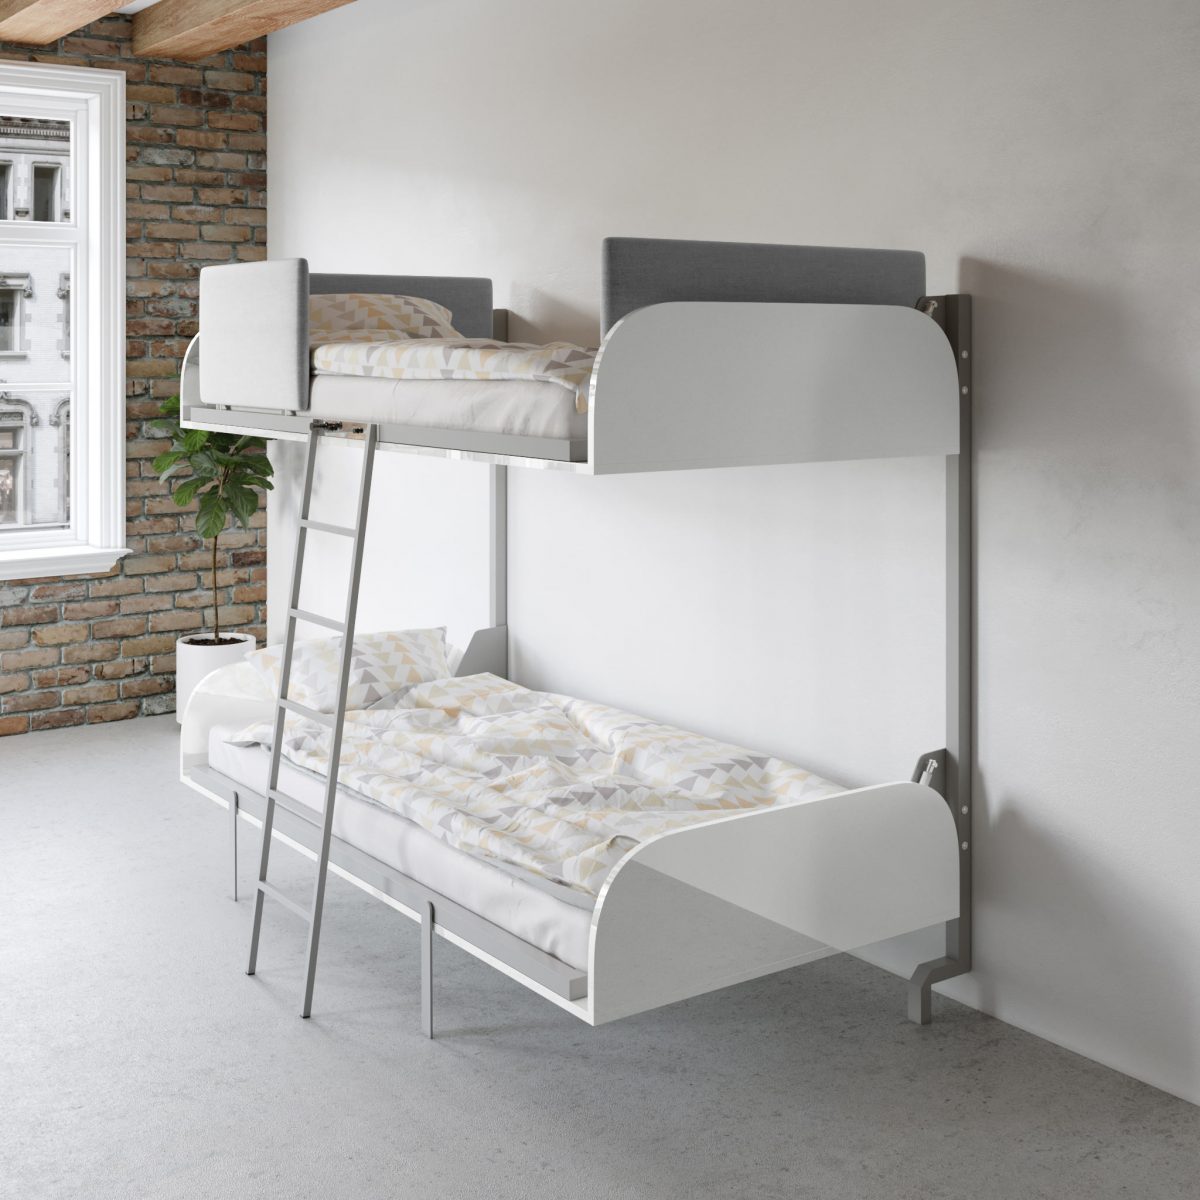 Compact Fold Away Wall Bunk Beds, Narrow Bunk Beds